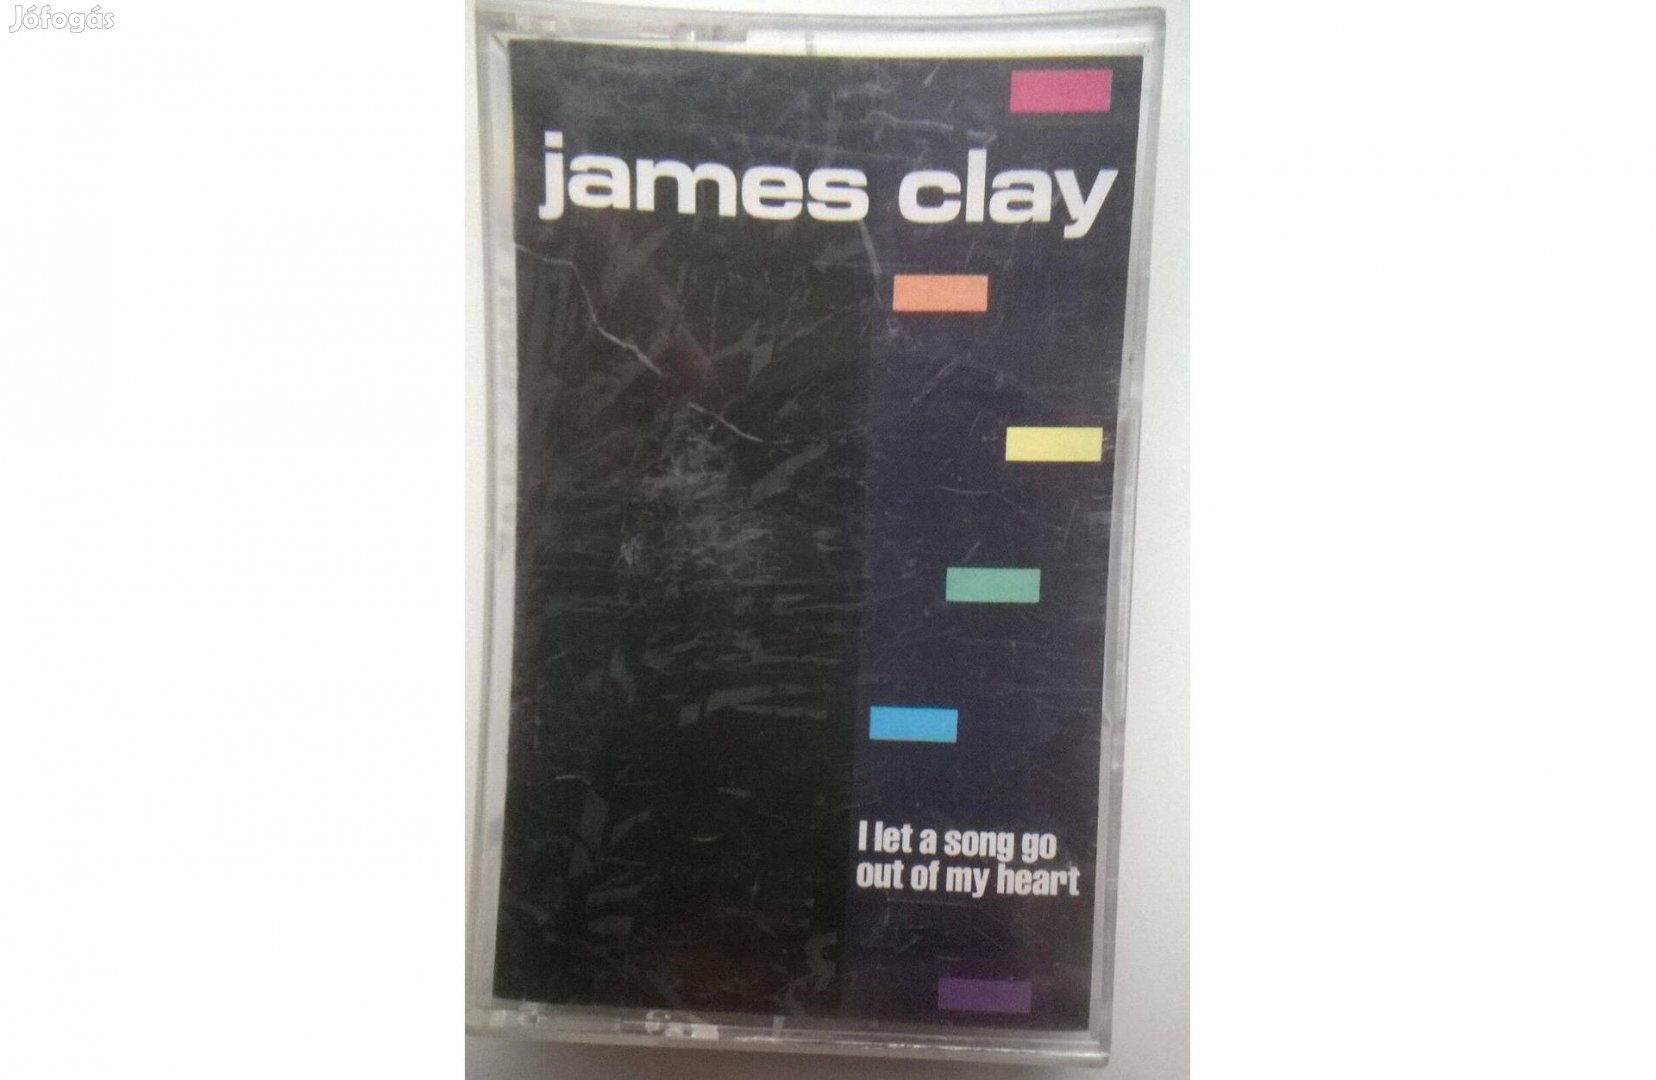 James Clay - Kiengedtem egy dalt a szívemből, 1991 , Island